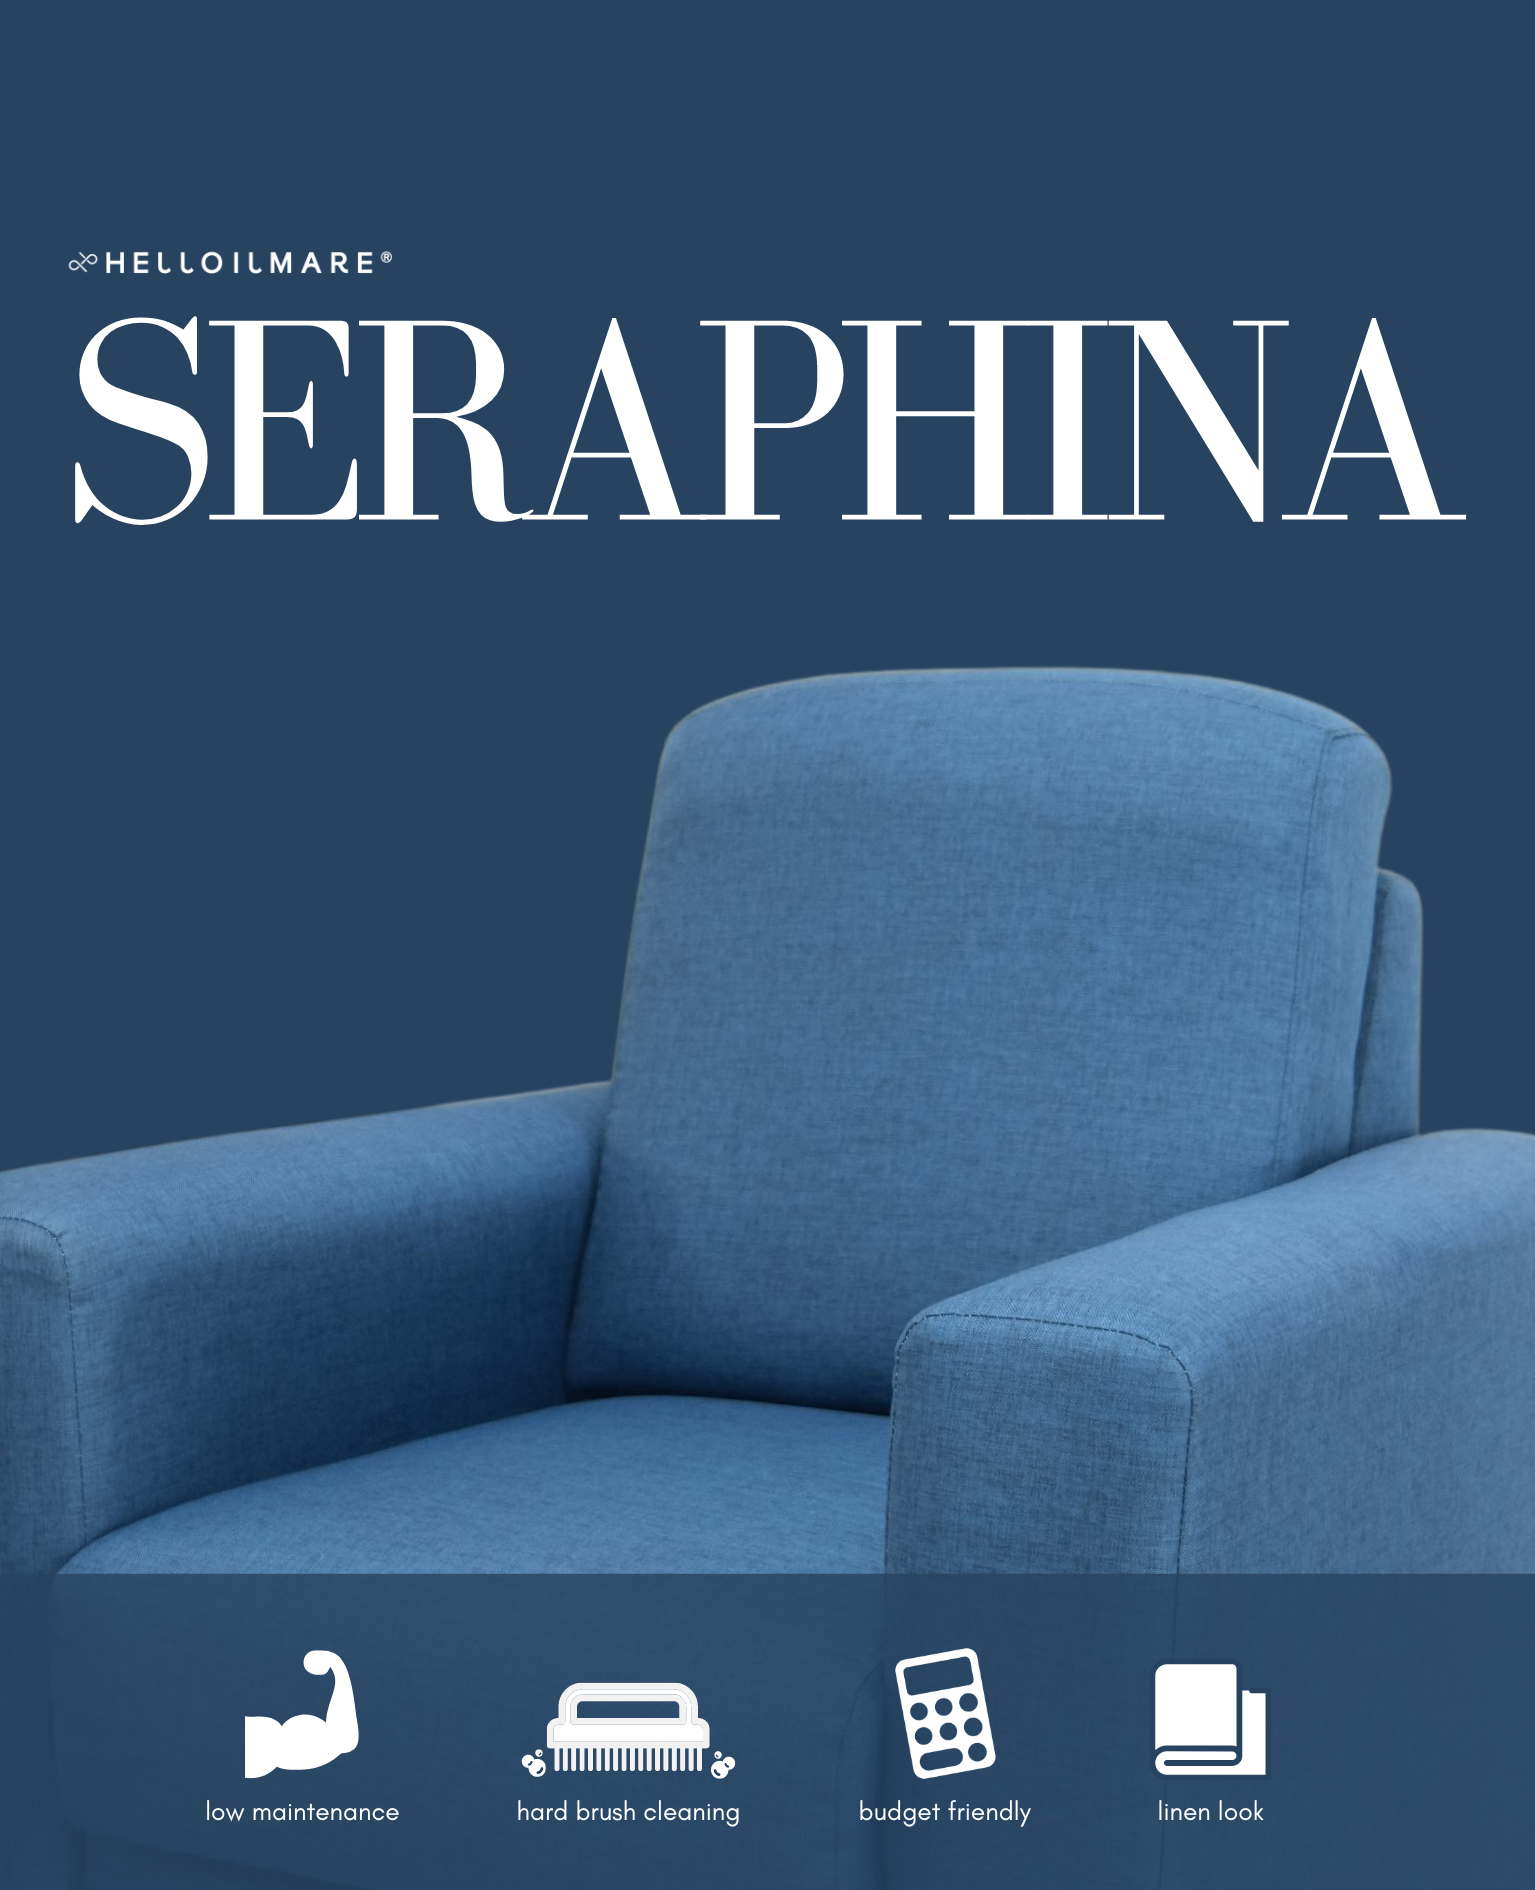 4 Seater Seraphina - Helloilmare